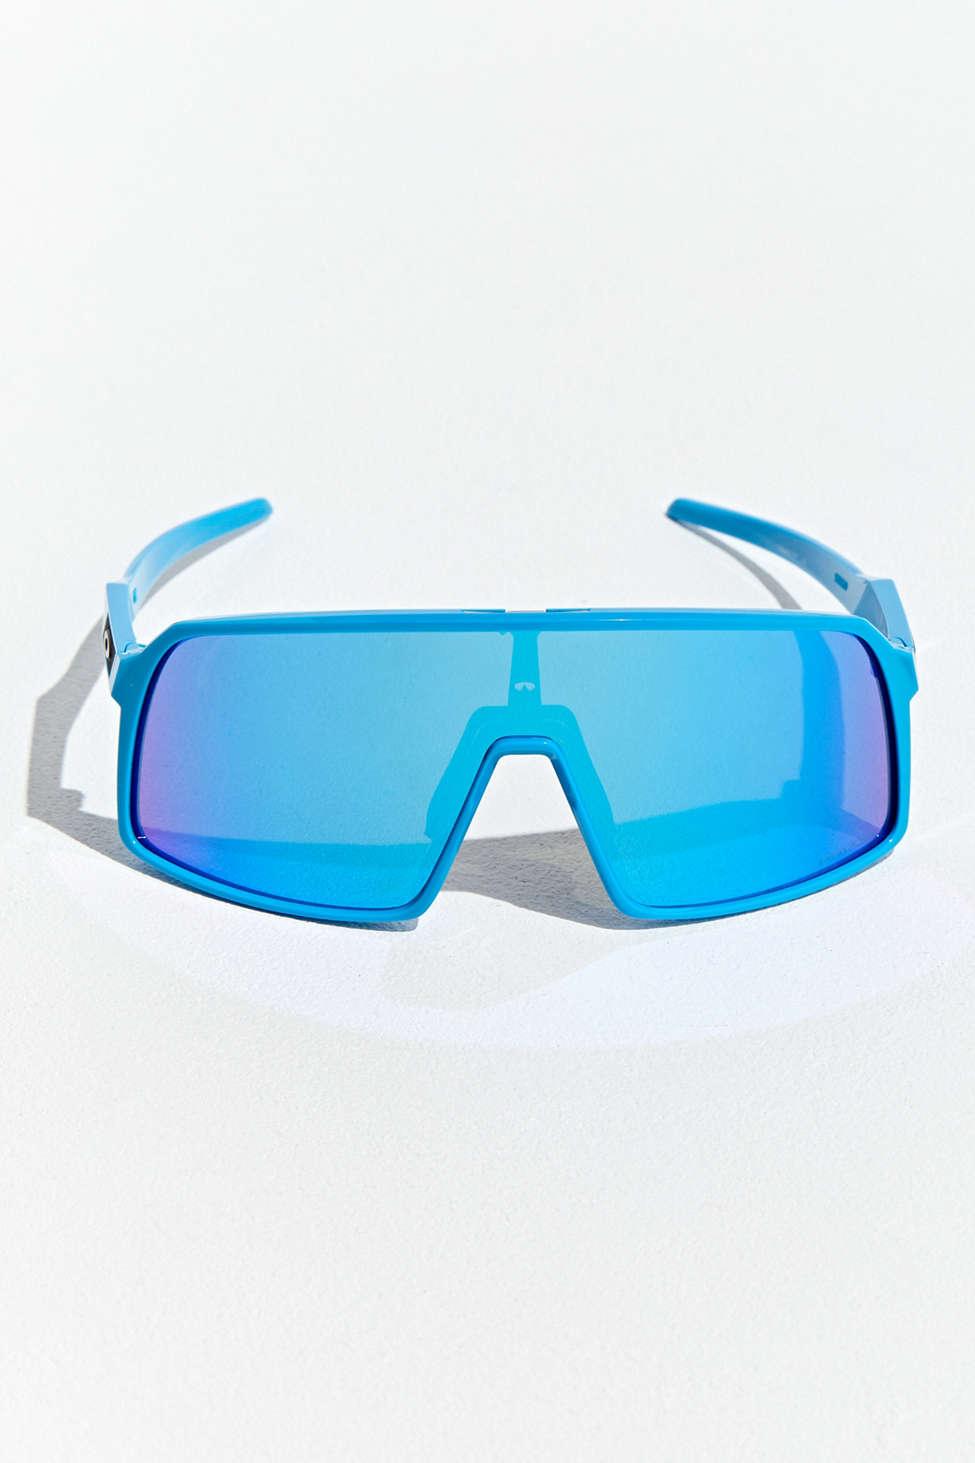 Oakley Sutro Shield Sunglasses in Blue for Men - Lyst